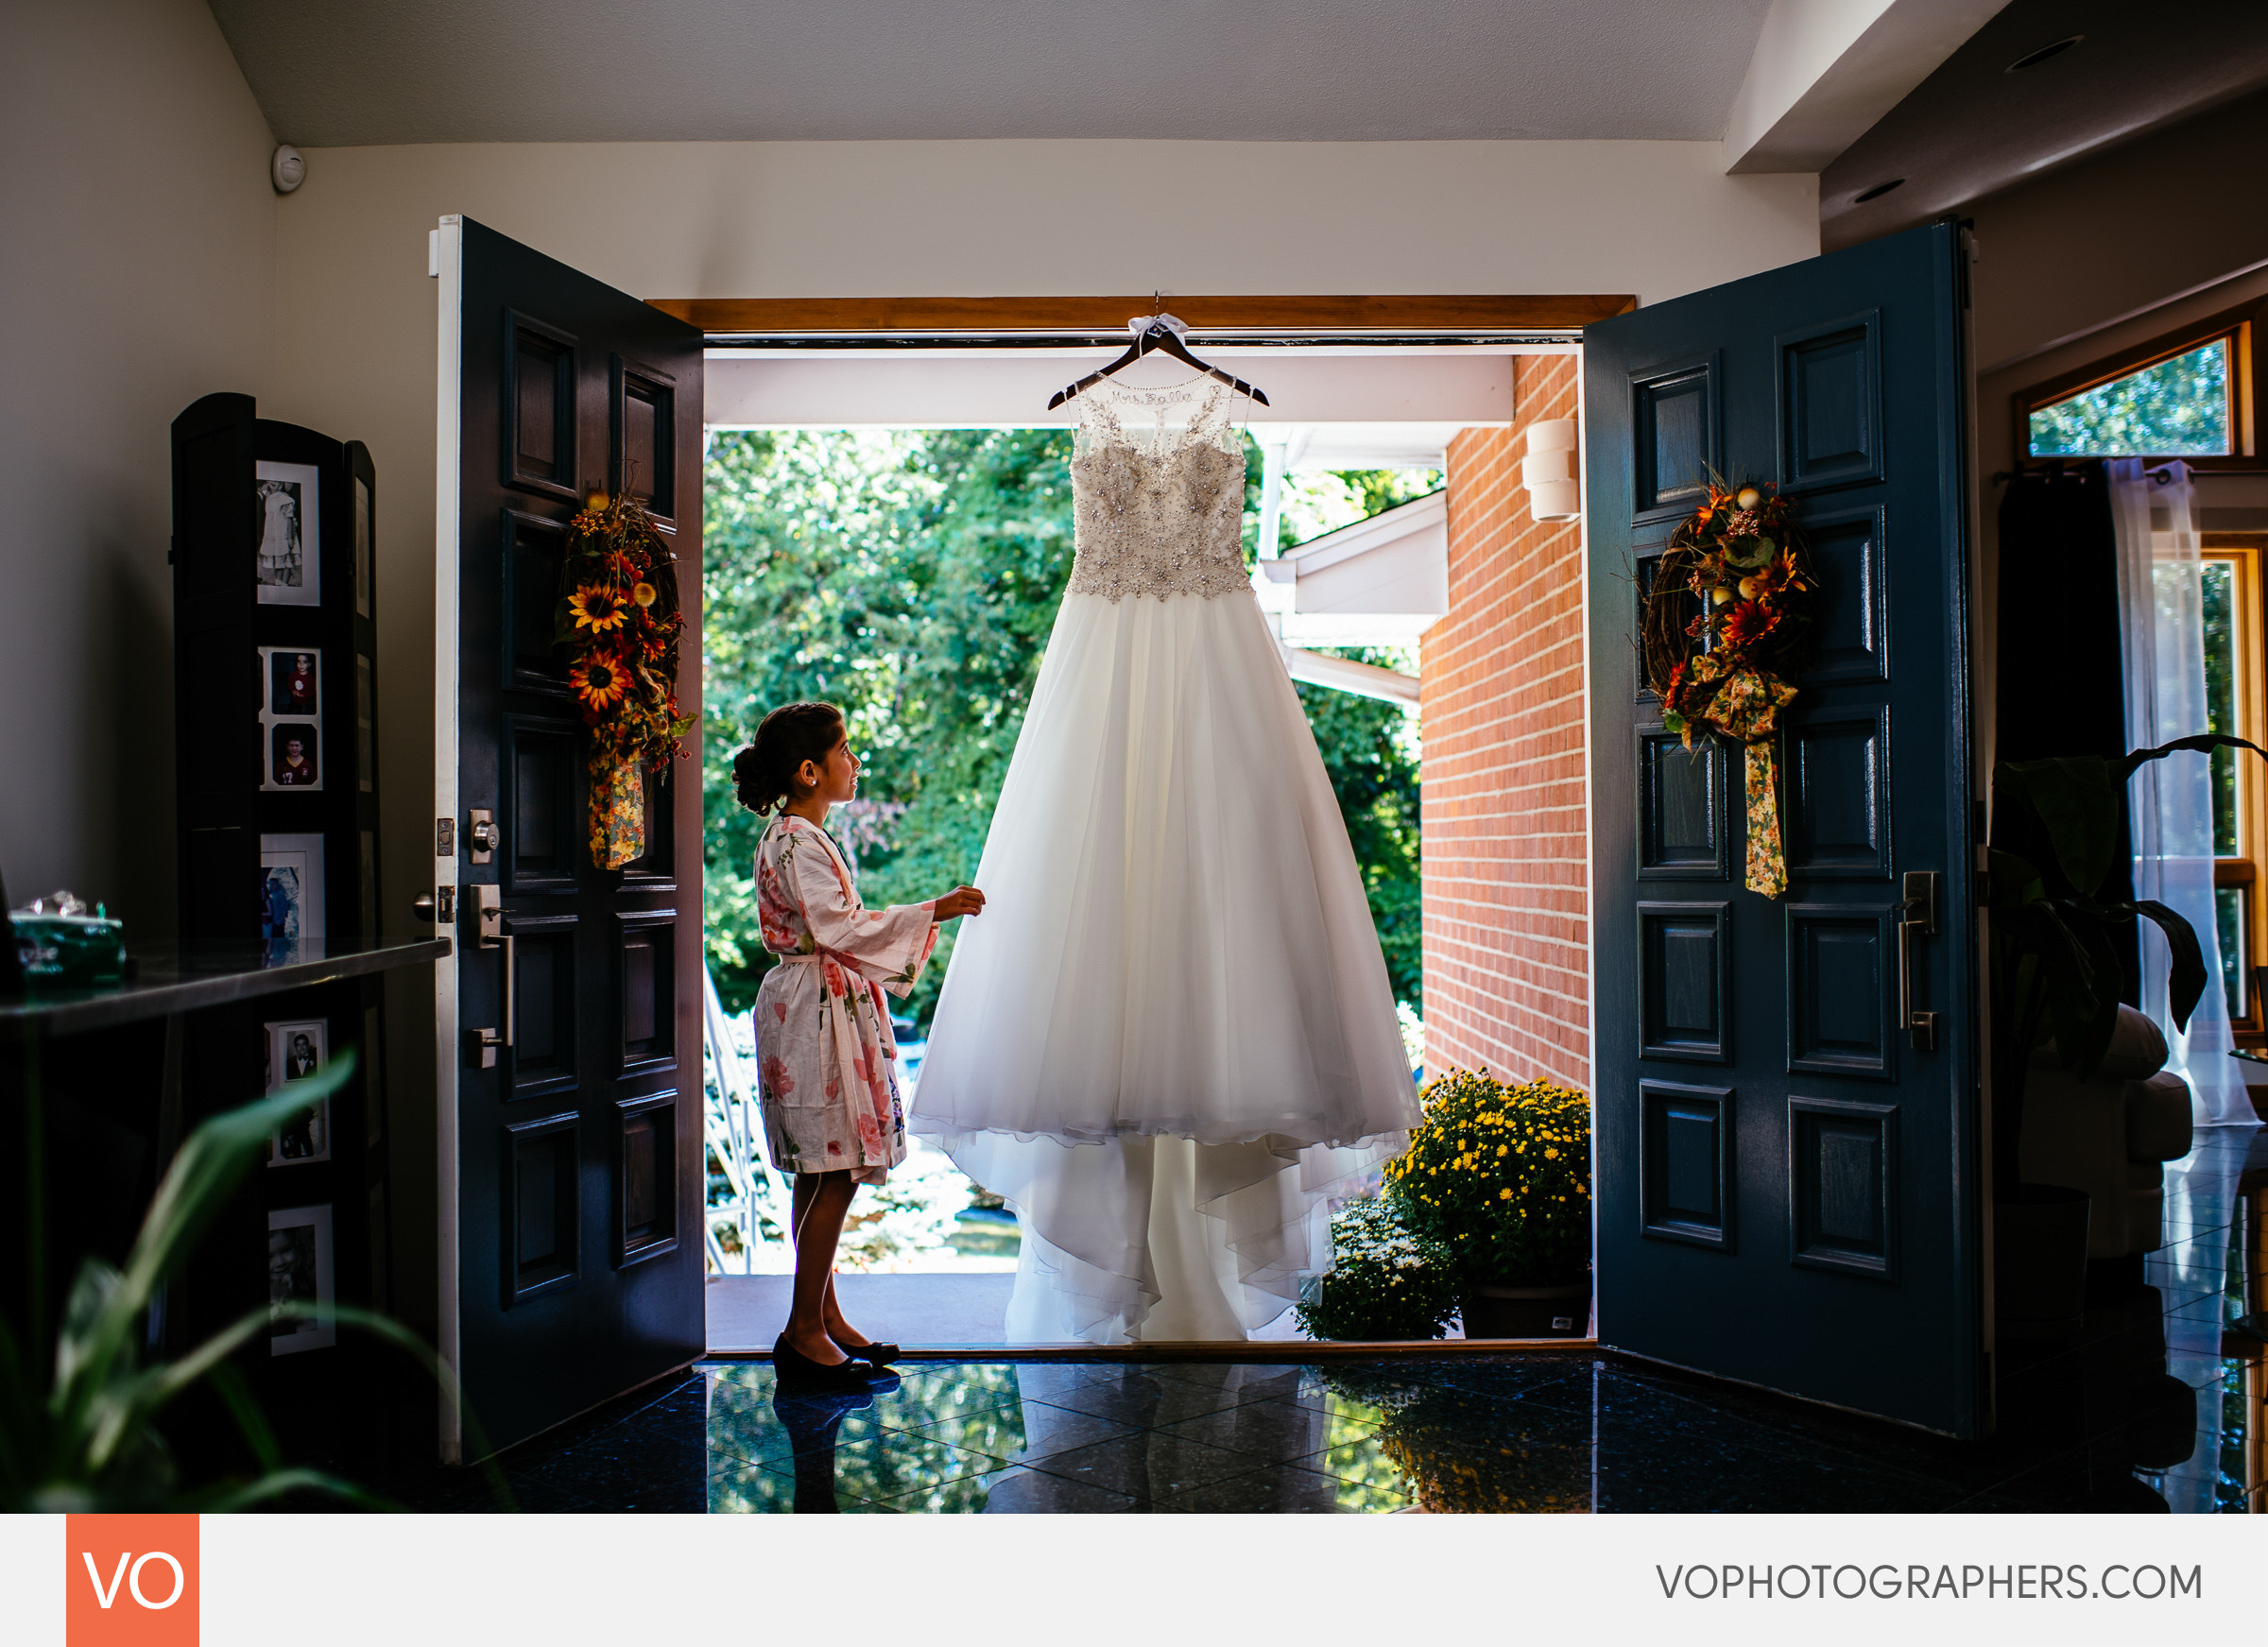 Wedding dress hanging in the doorway